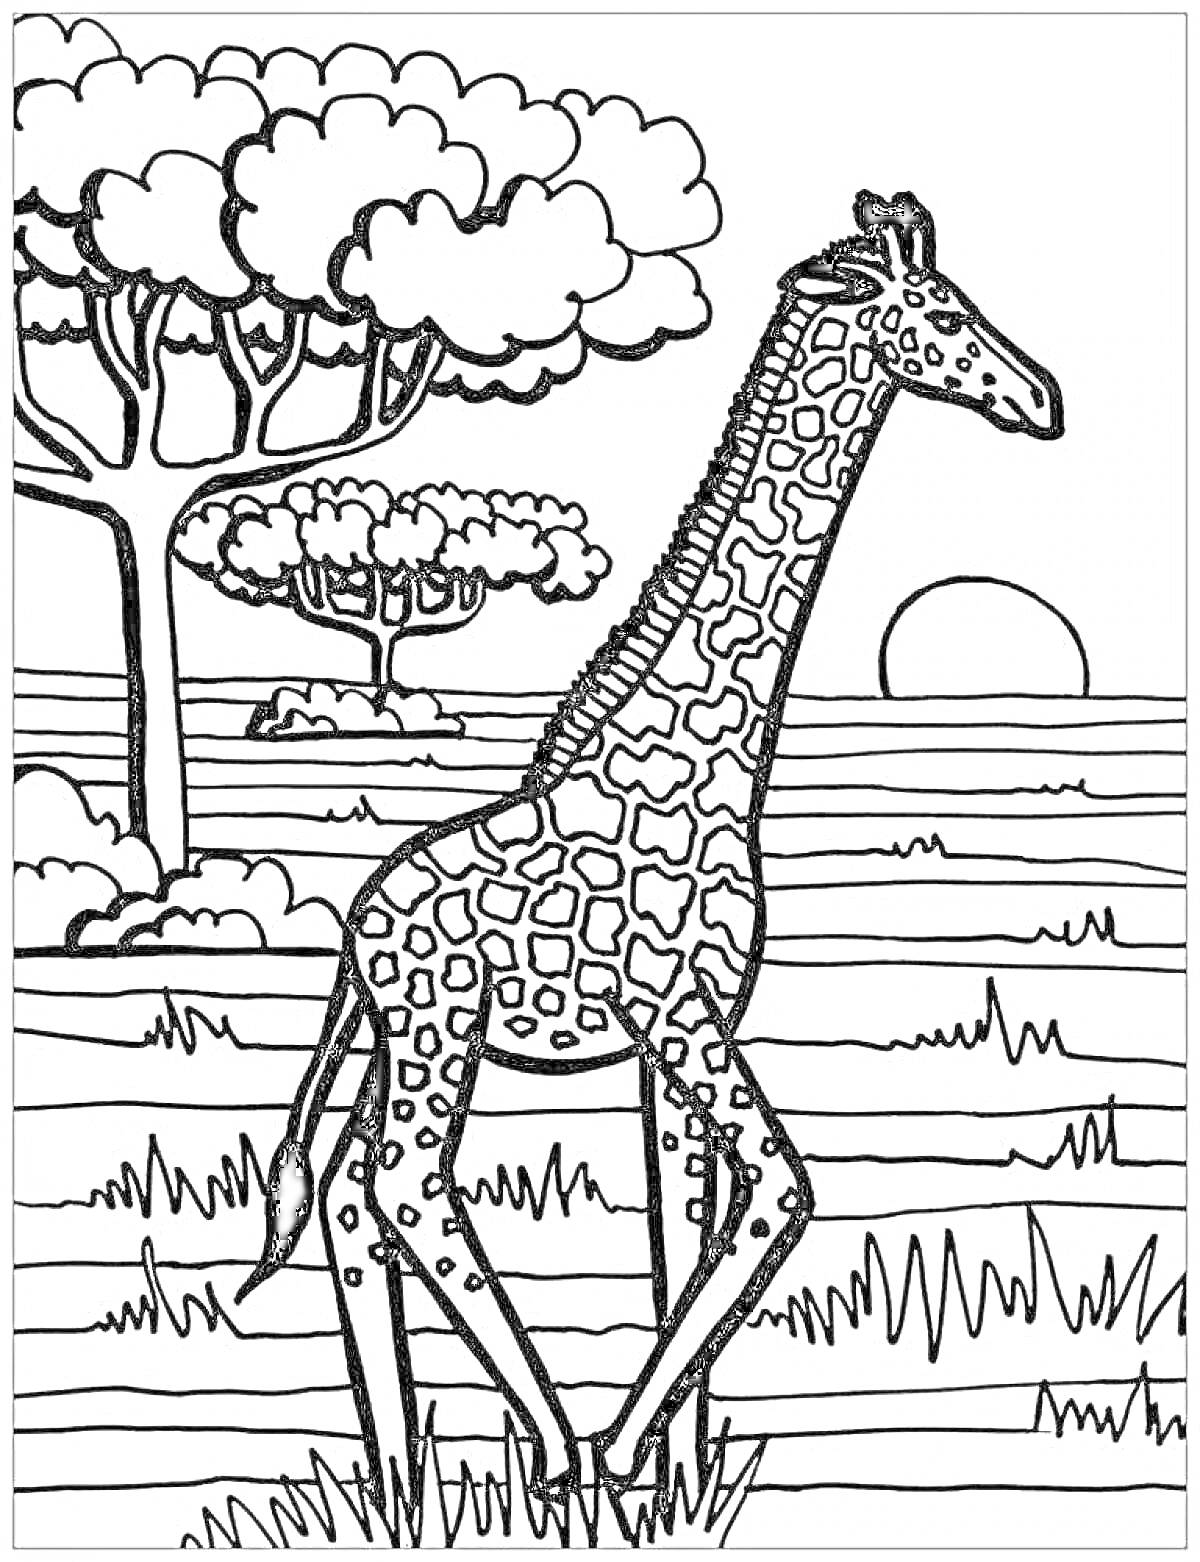 Раскраска Жираф на саванне с деревьями, травой и закатом